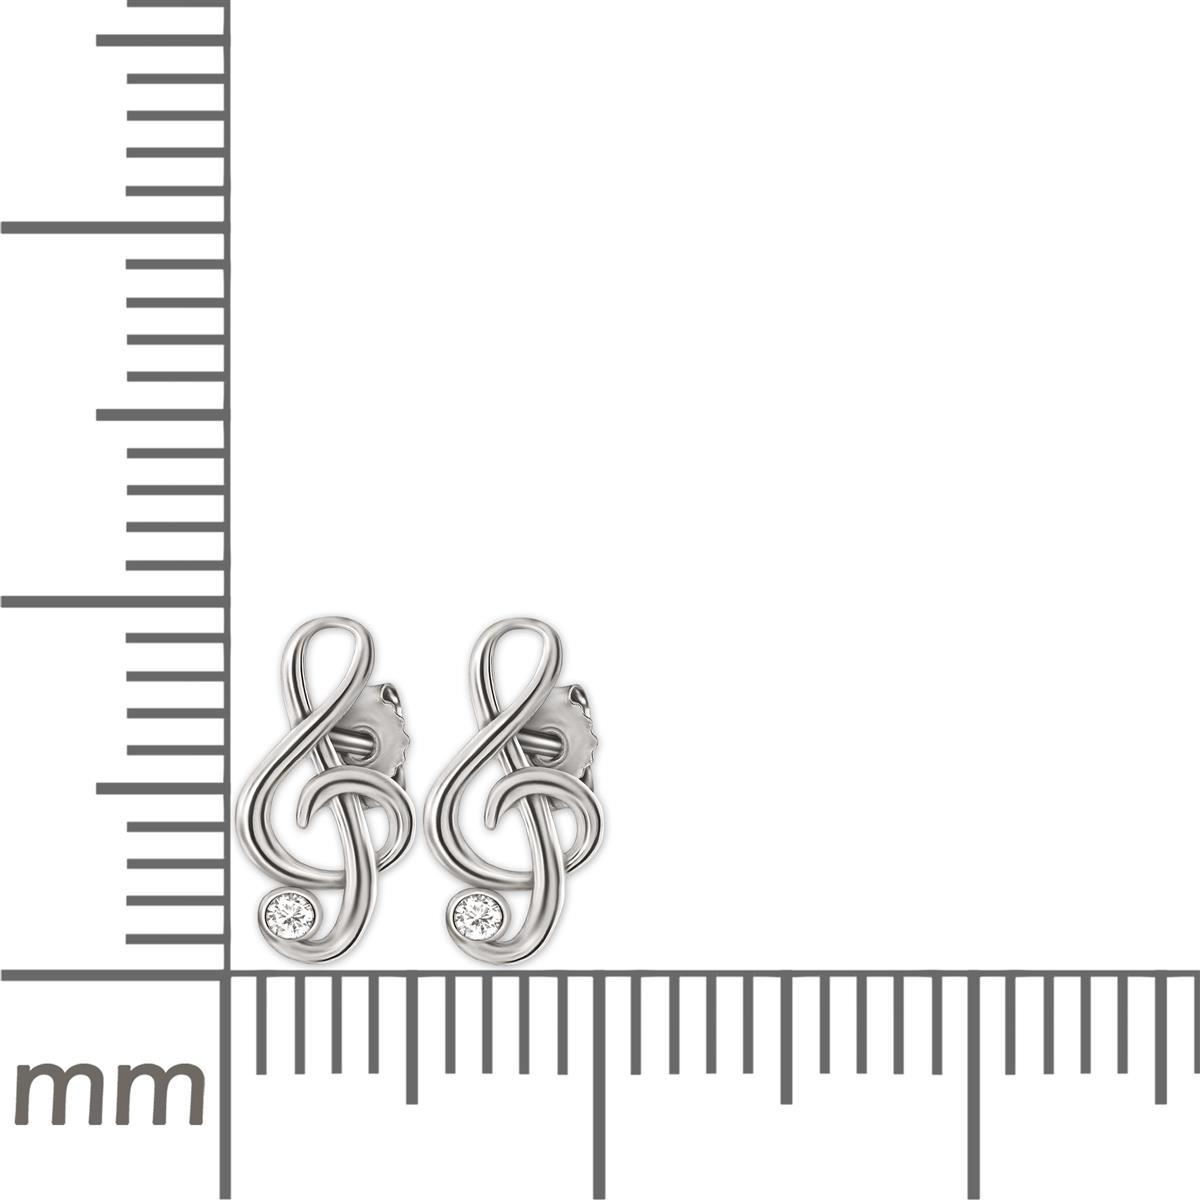 Silberne Ohrstecker Notenschlüssel 9 x 5 mm mit Zirkonia weiß glänzend Echt Silber 925